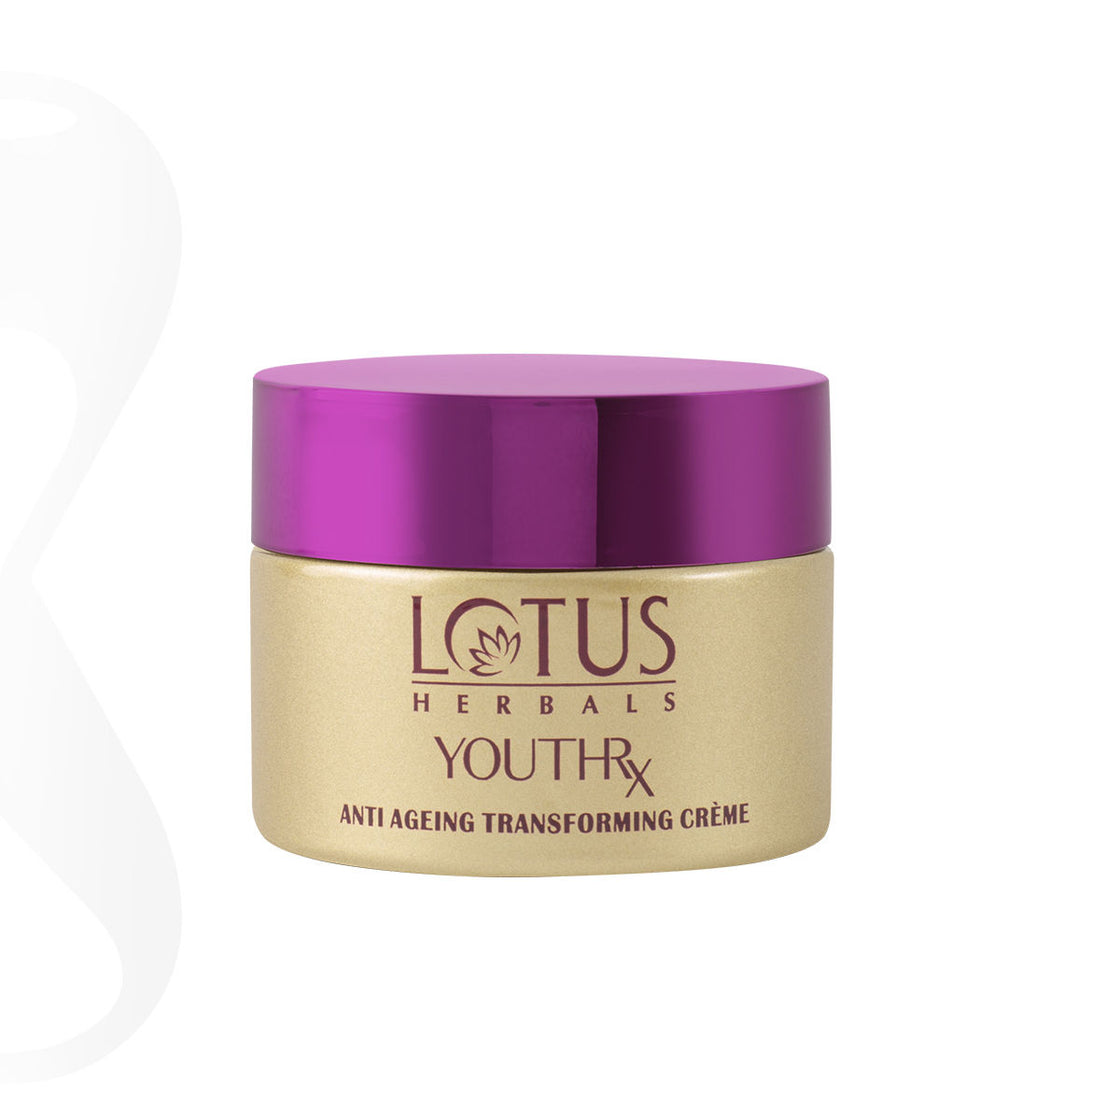 Lotus Herbals YouthRx Anti-Ageing Transforming Creme SPF 25 Pa +++ (50gm)